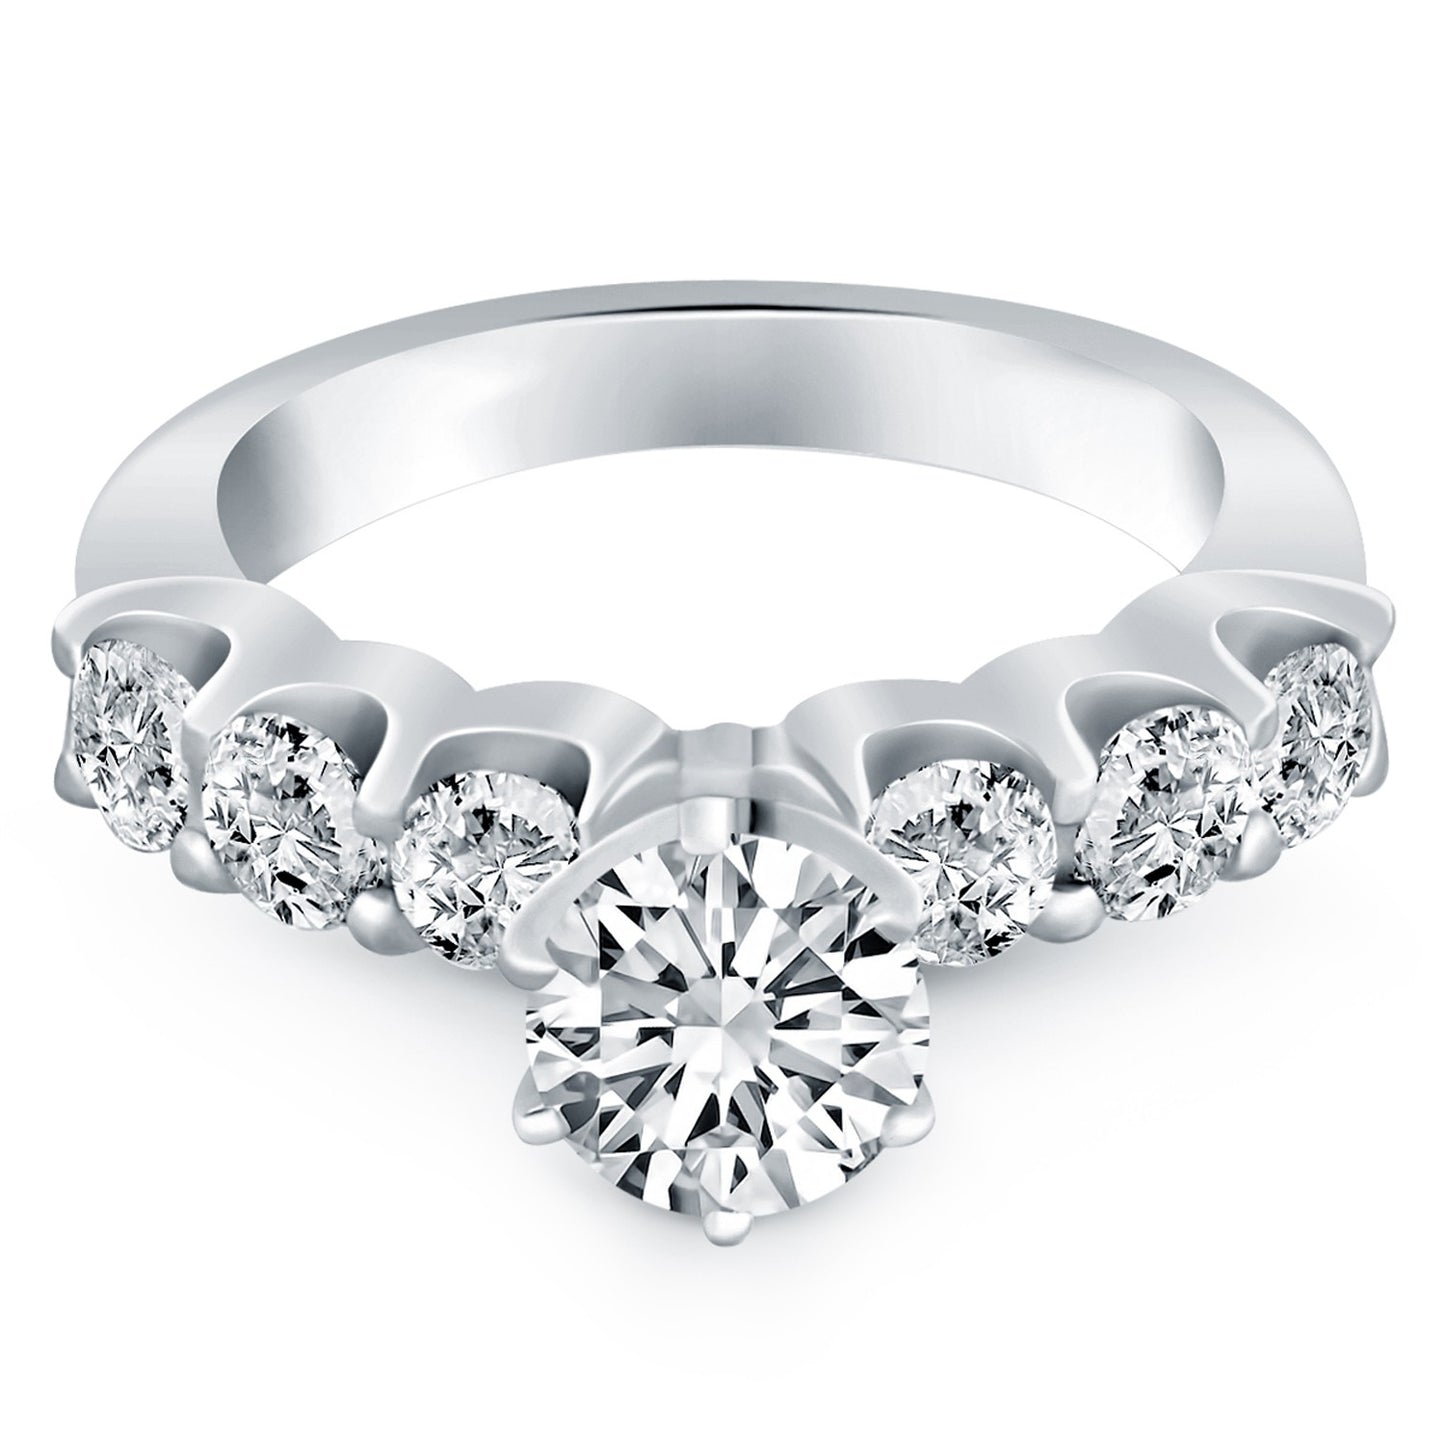 14k White Gold Shared Prong Diamond Engagement Ring